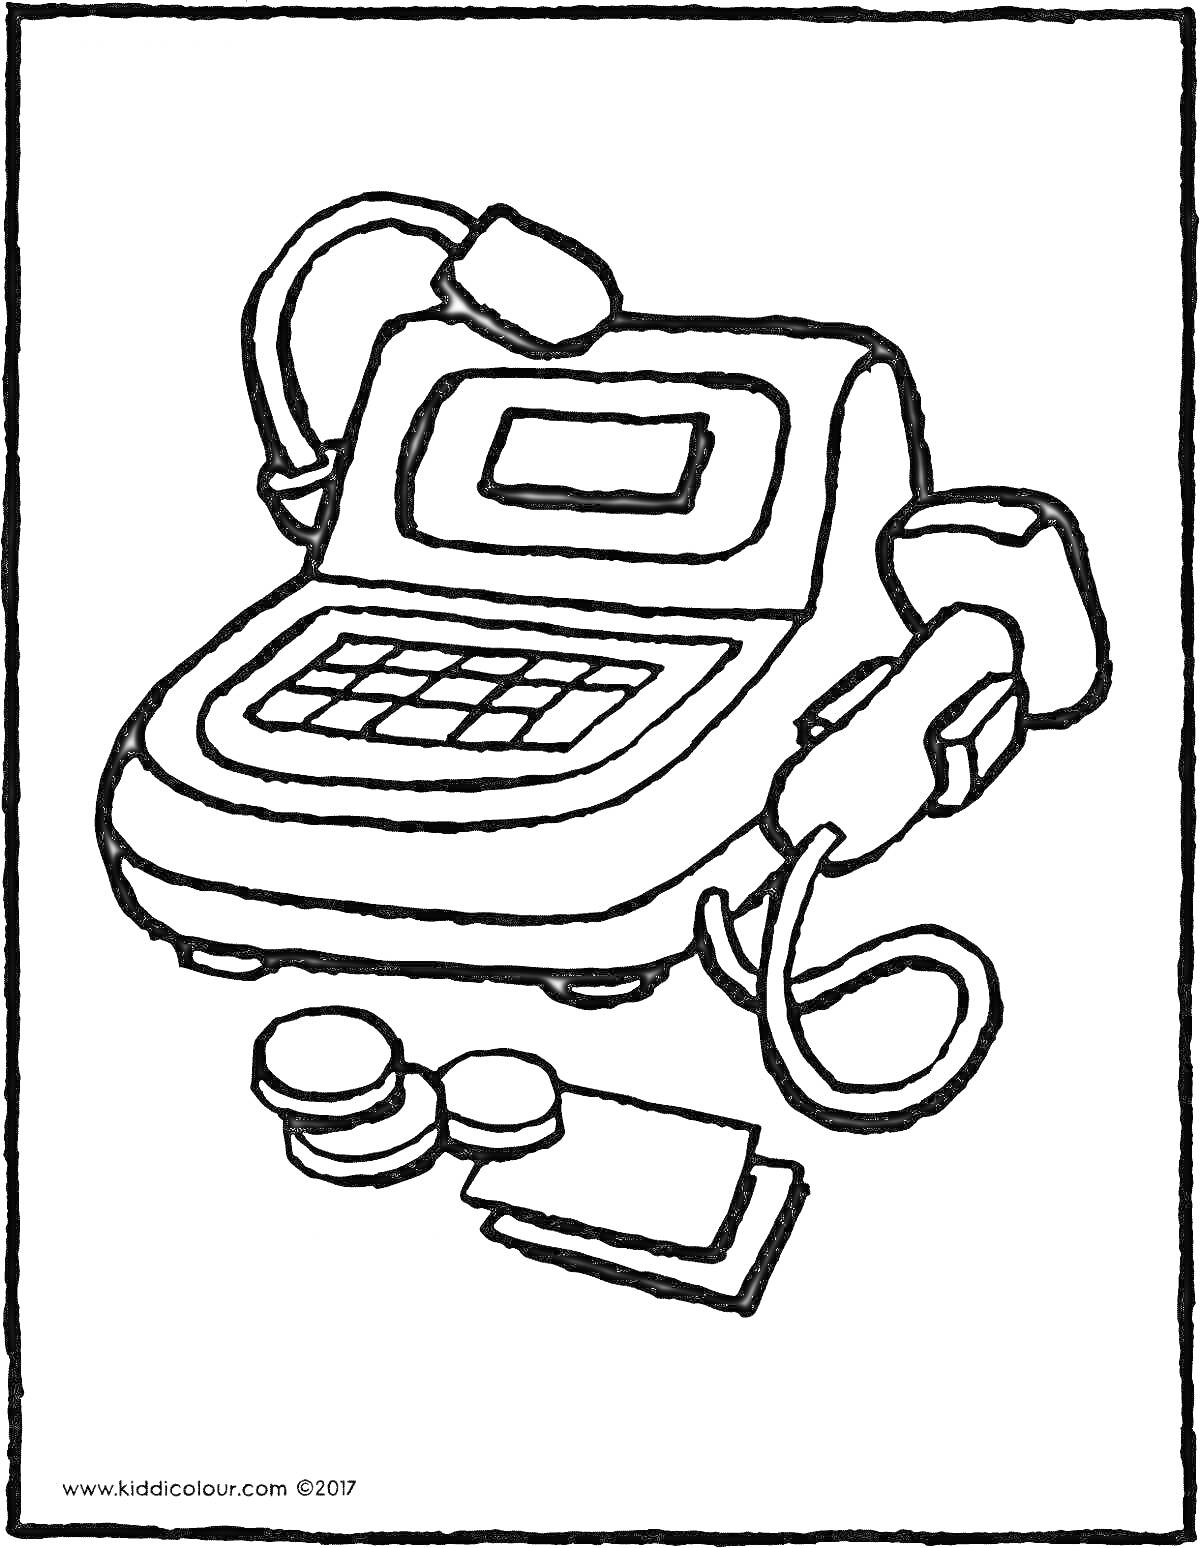 Раскраска Кассовый аппарат с экраном, клавиатурой и считывателем штрих-кодов, две монеты и две купюры